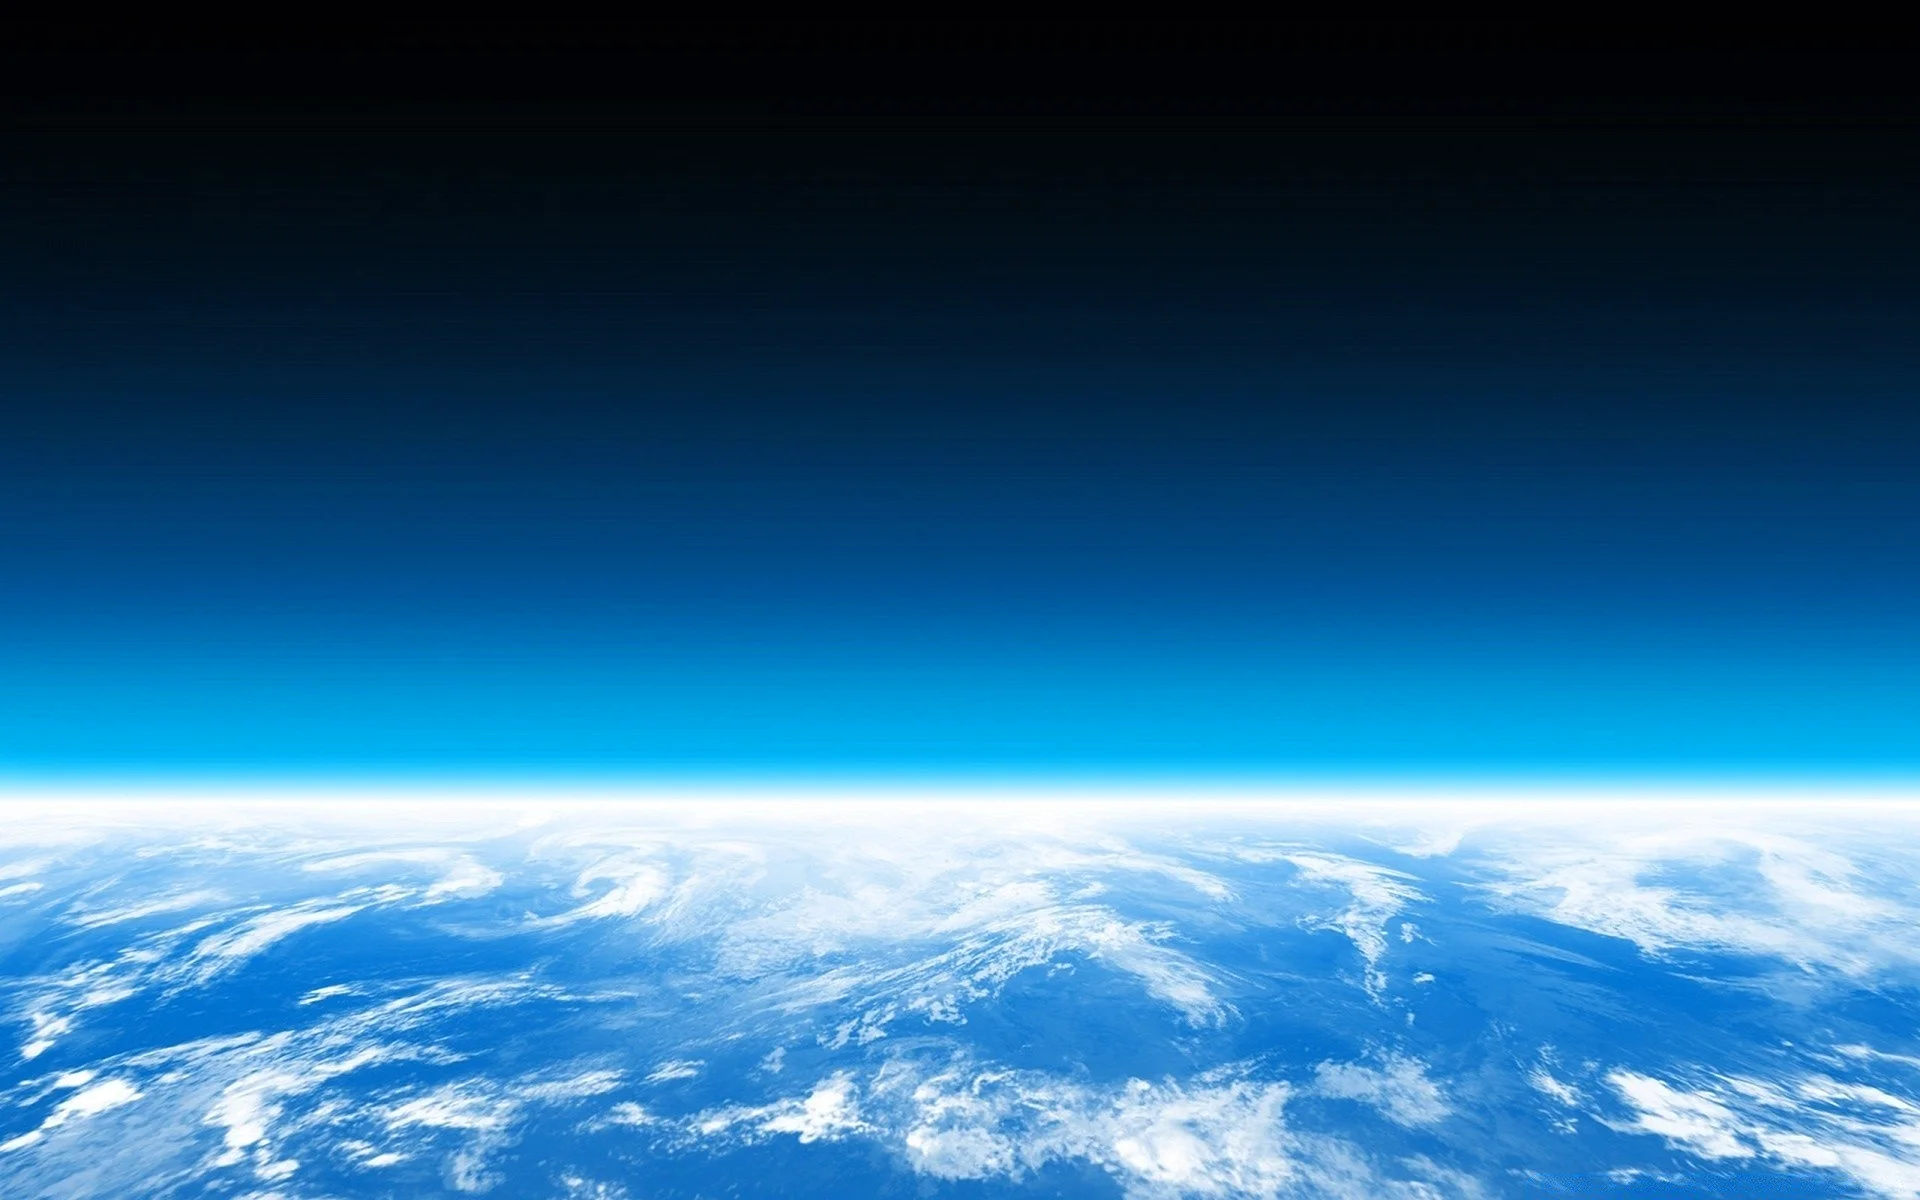 Космос стратосфера атмосфера